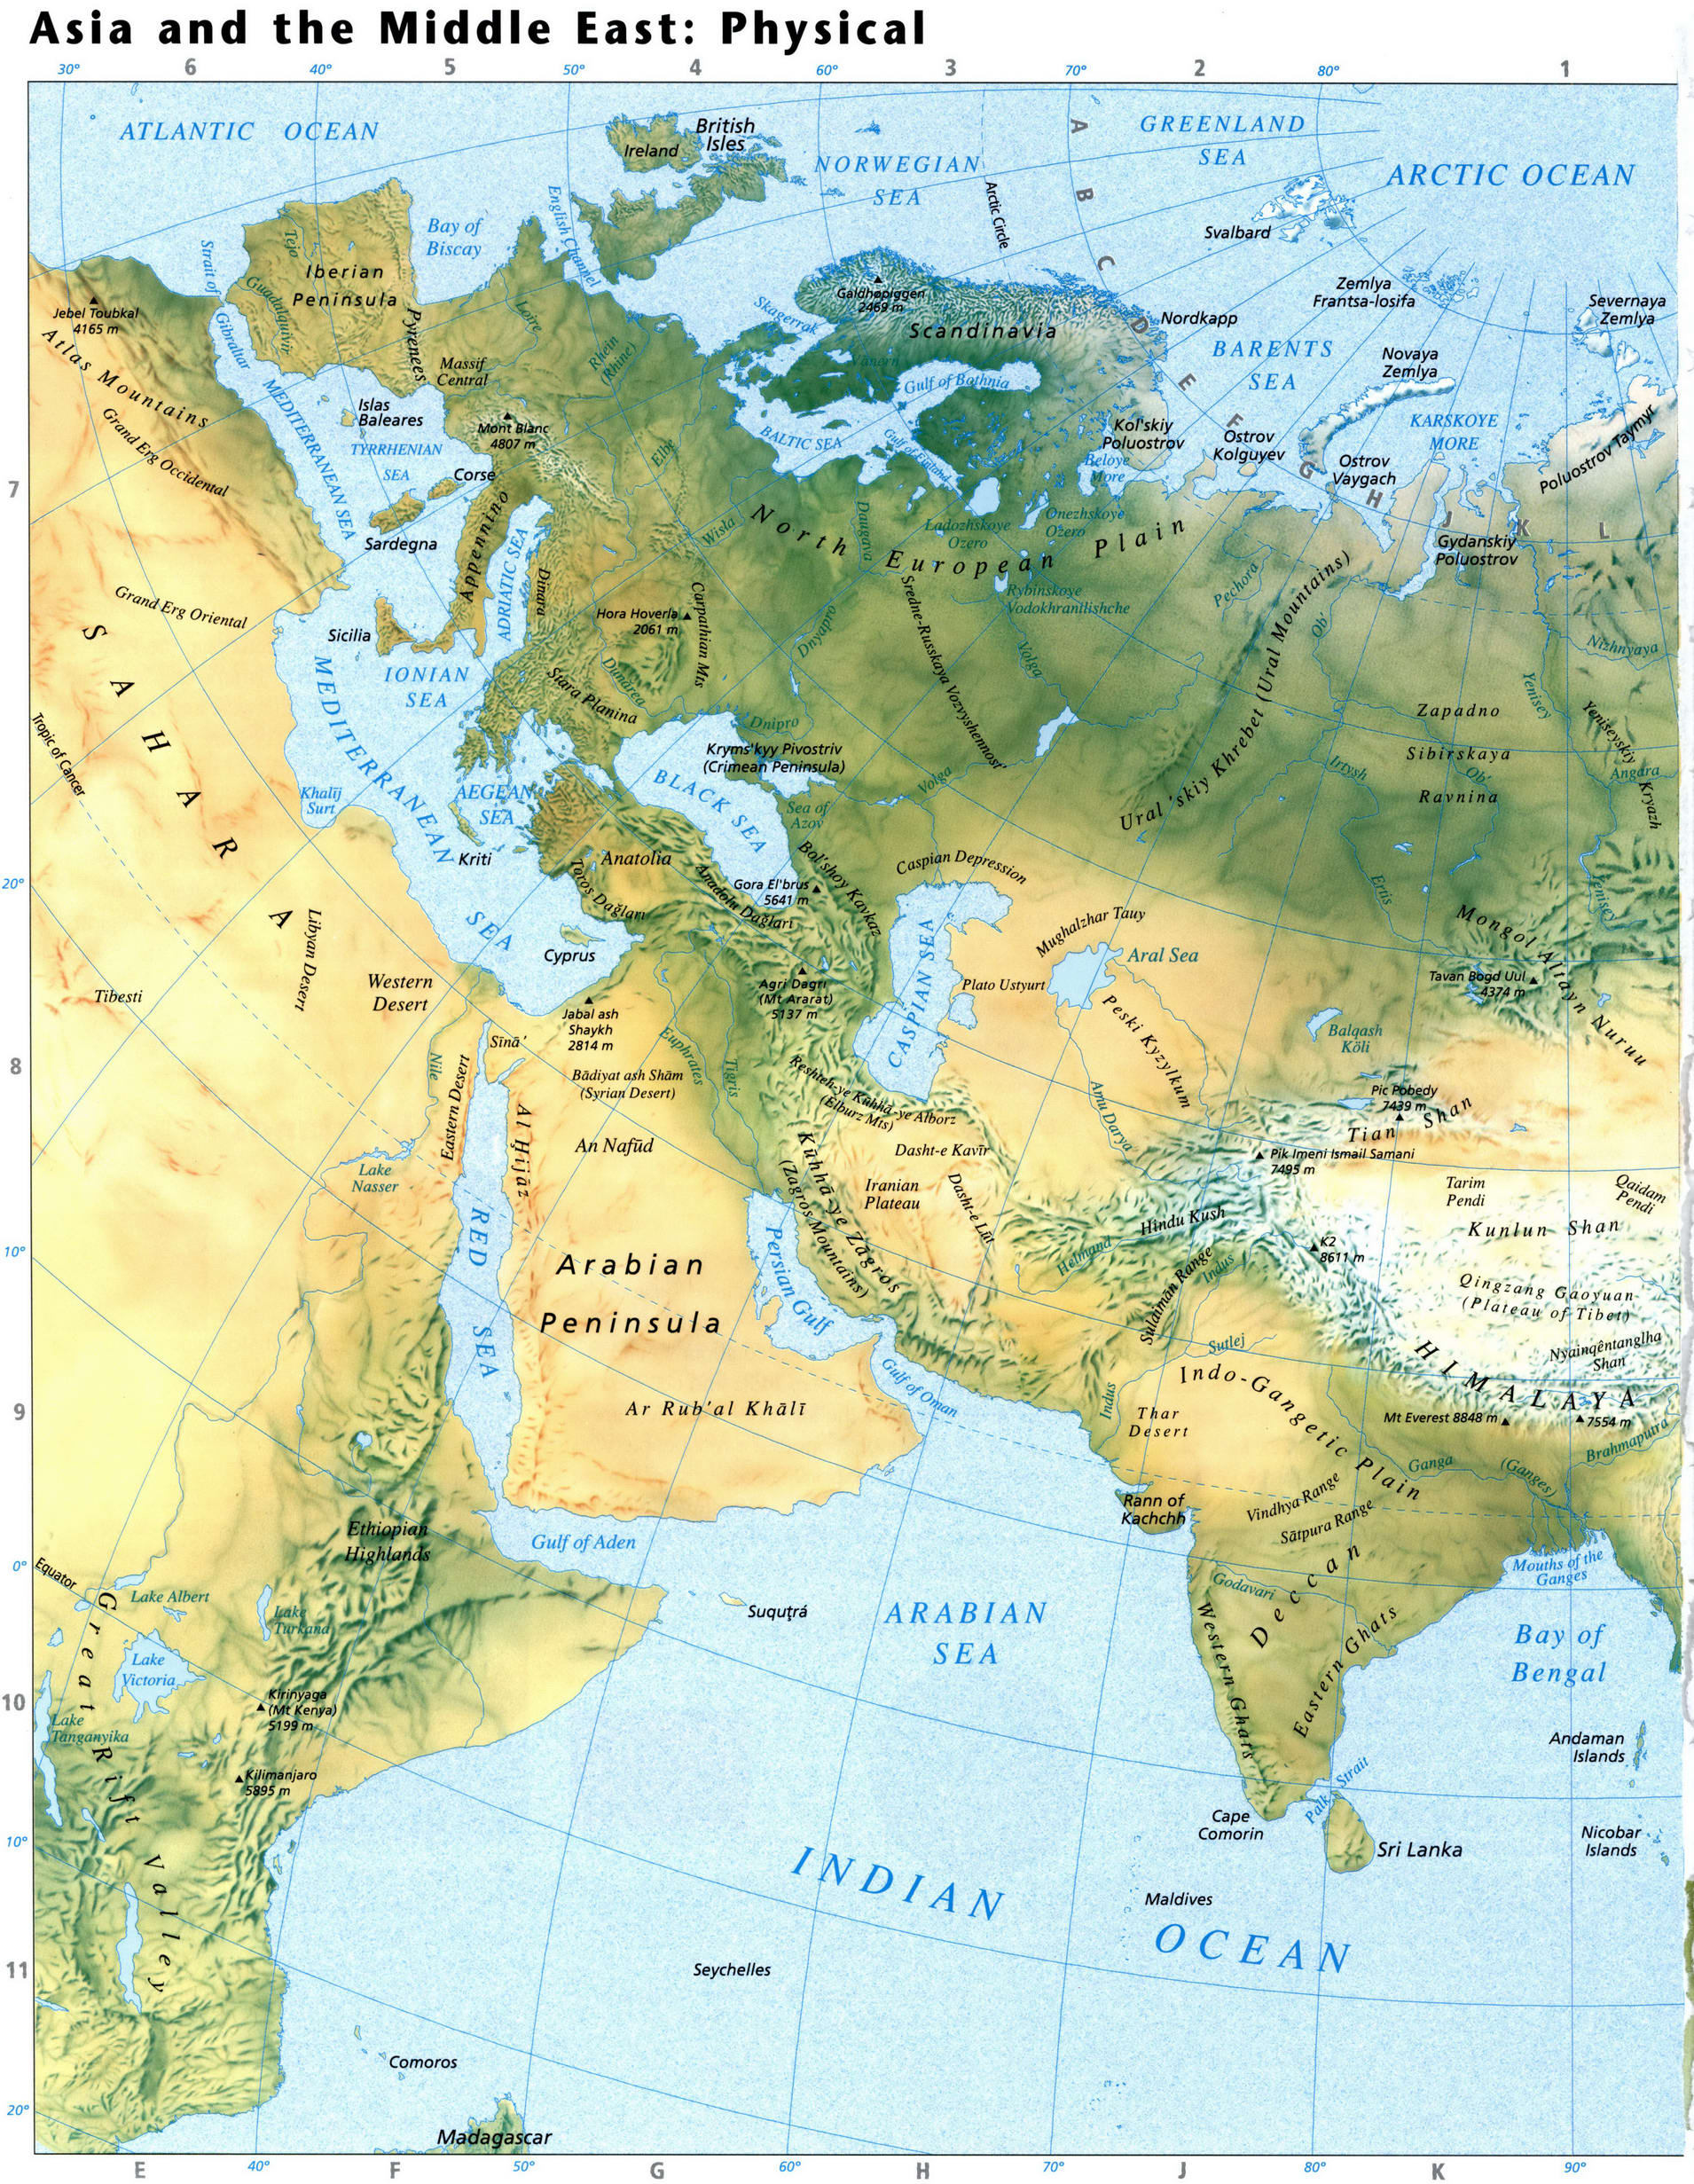 Физическая карта Азии - Средний Восток